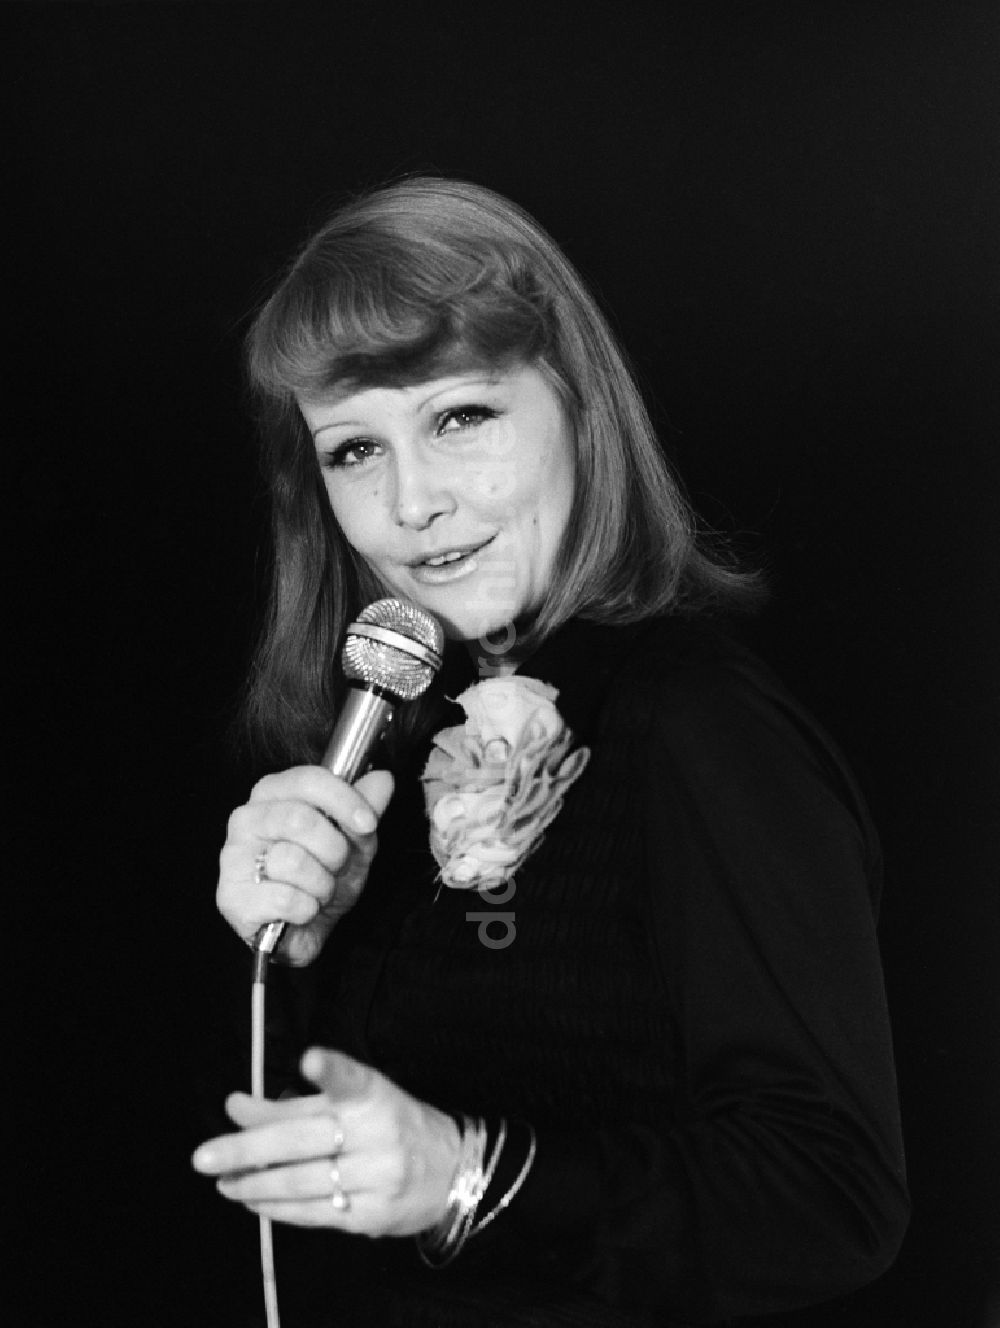 Berlin: Schauspielerin und Chansonnière Dorit Gäbler in Berlin, der ehemaligen Hauptstadt der DDR, Deutsche Demokratische Republik